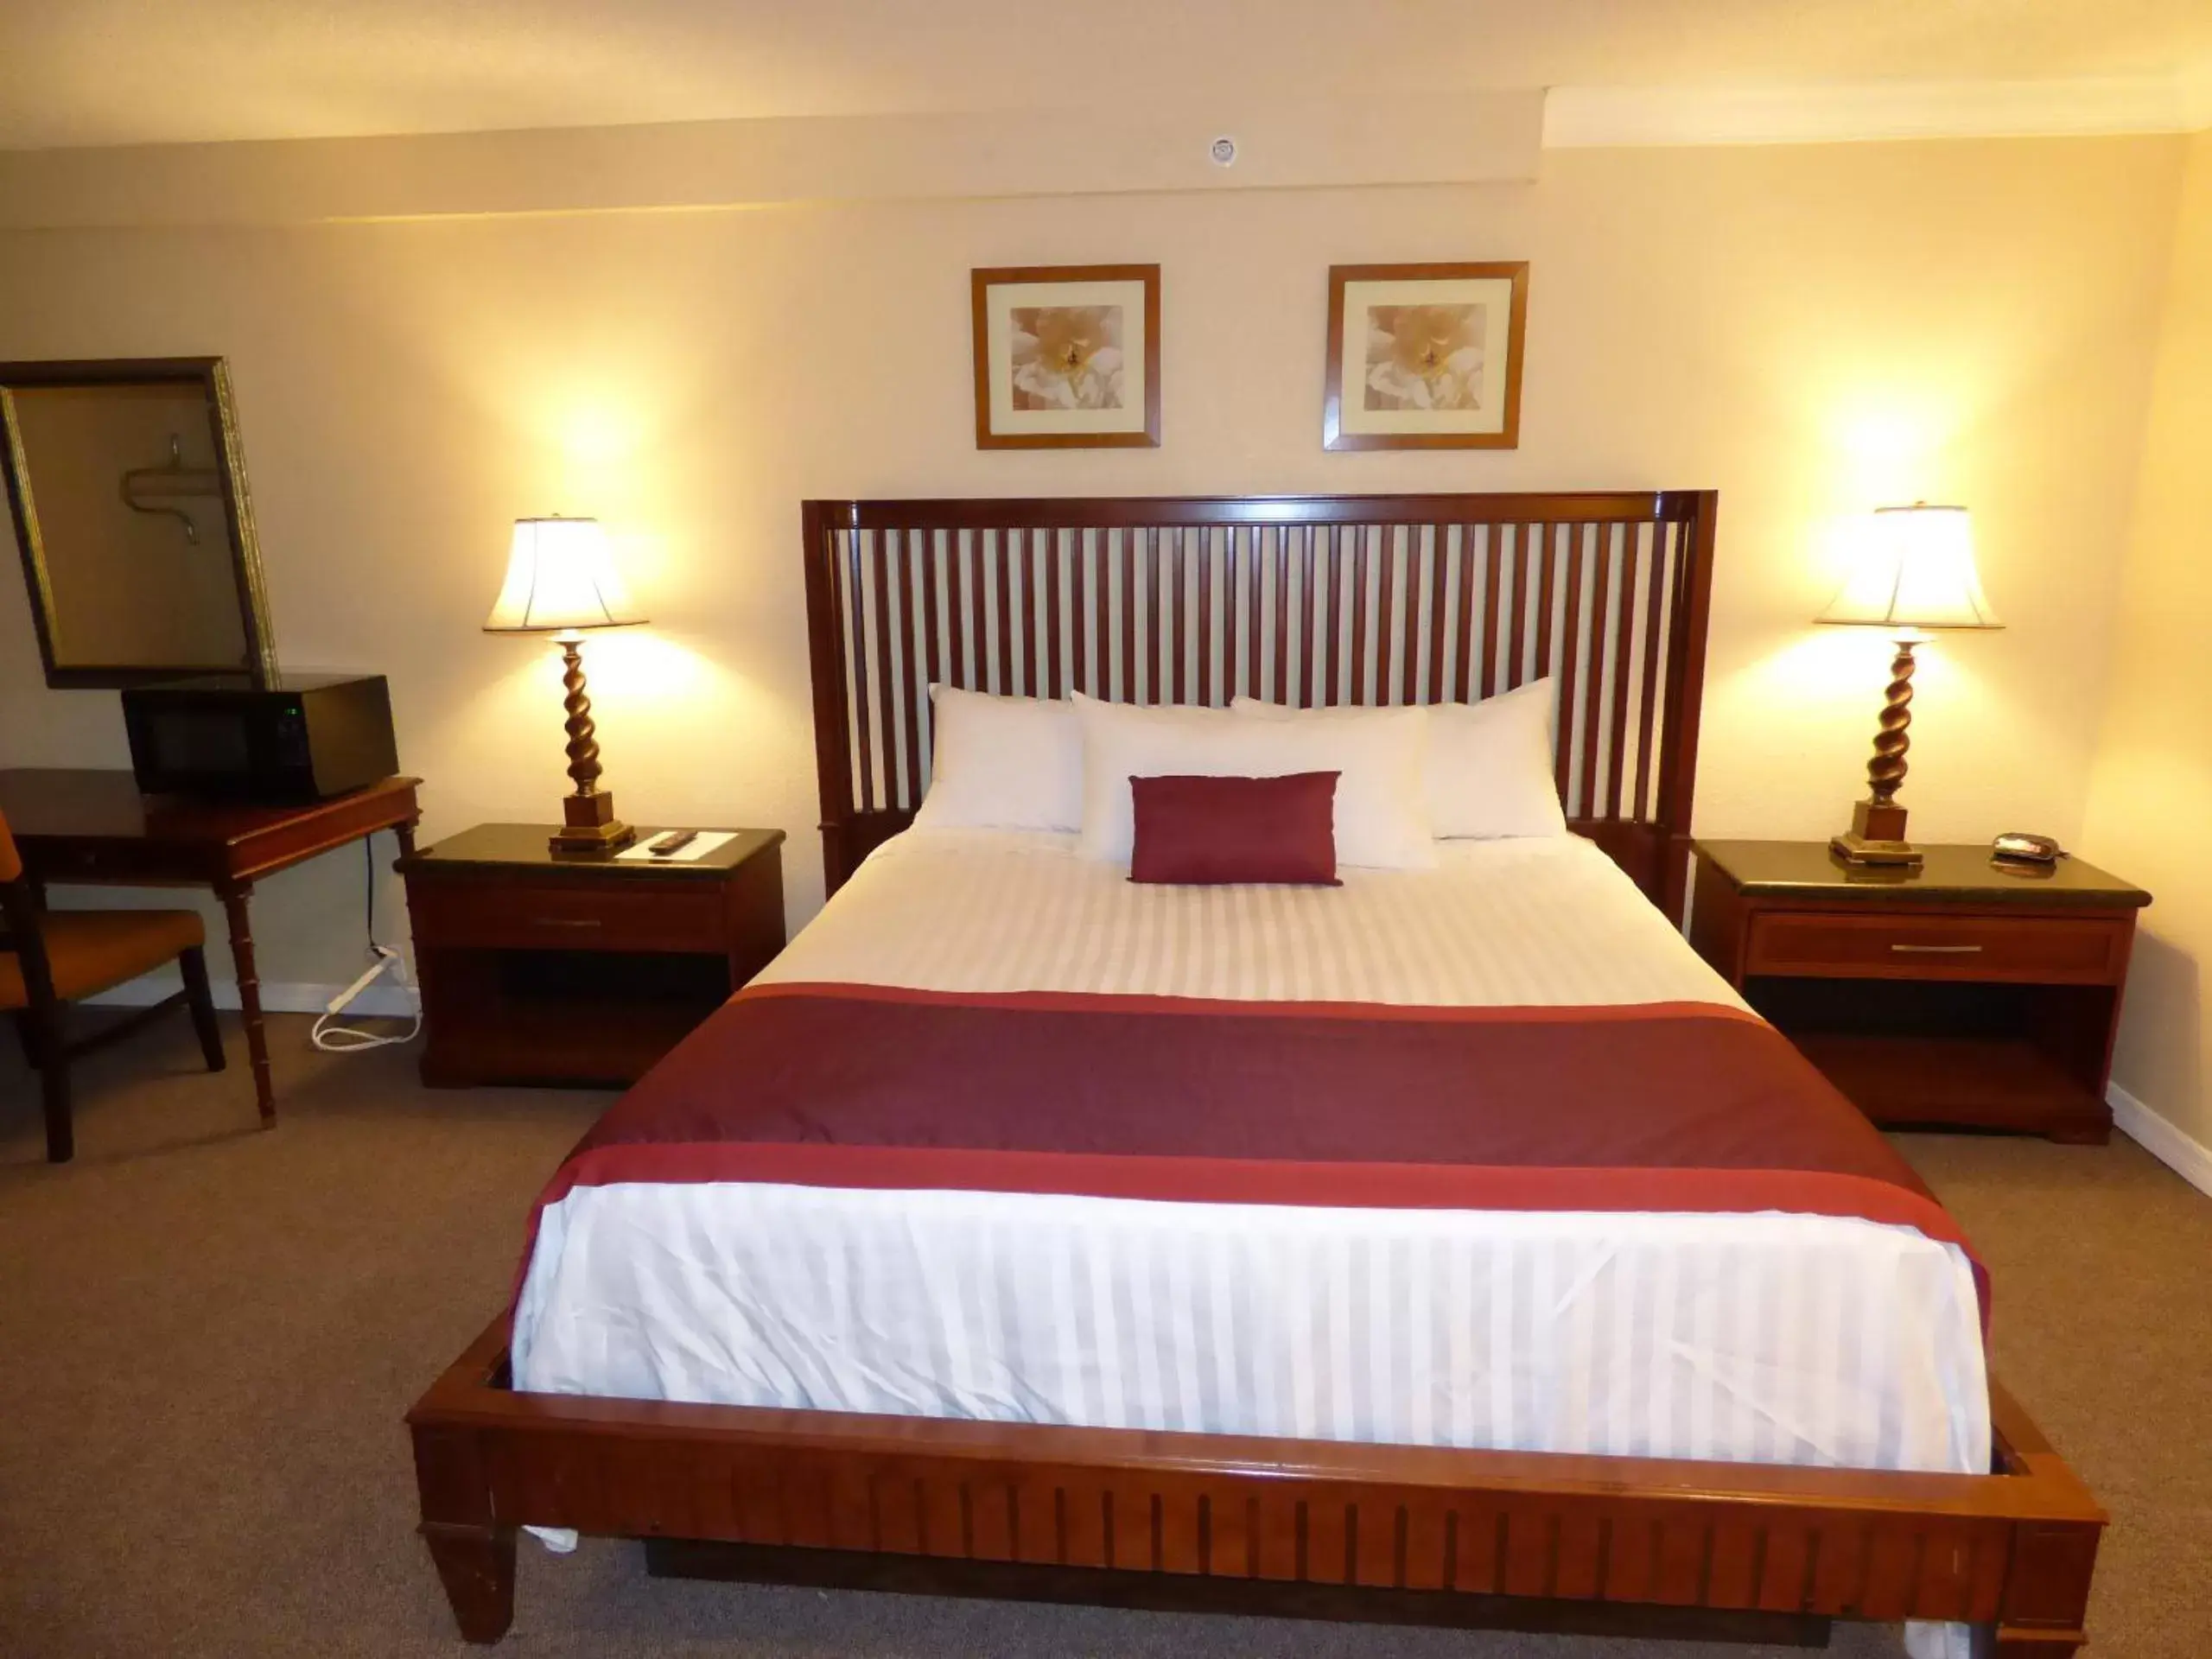 Bed, Room Photo in Days Inn & Suites by Wyndham Lake Okeechobee